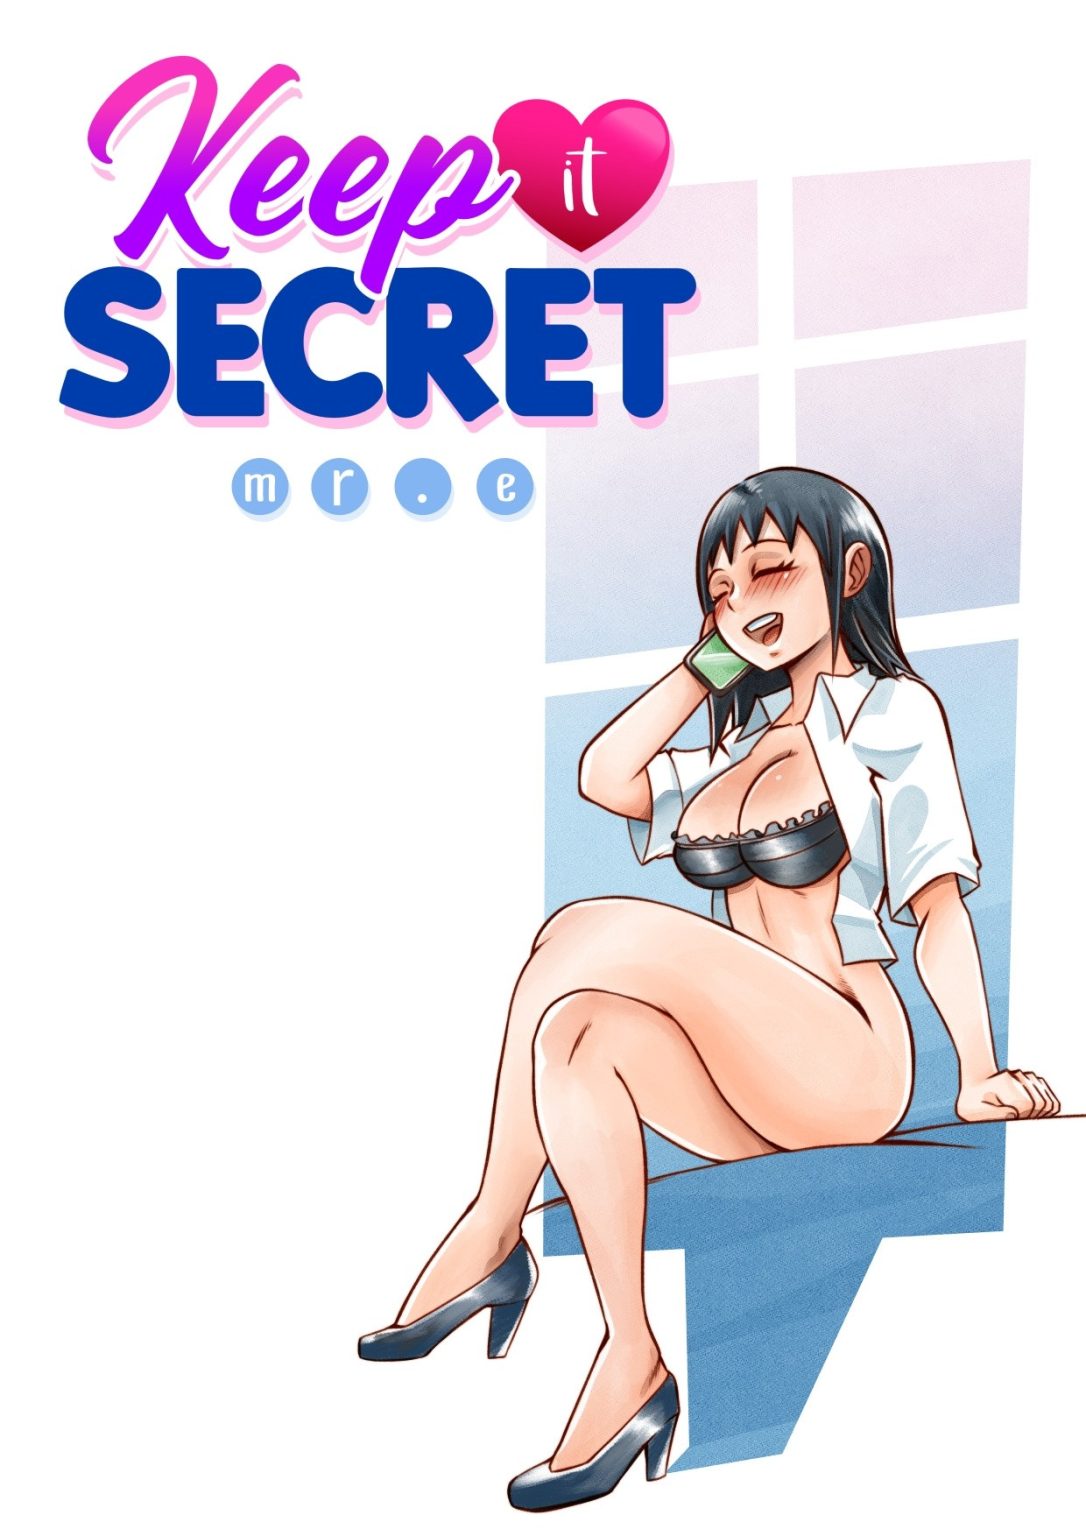 Keep it Secret porn comic picture 1